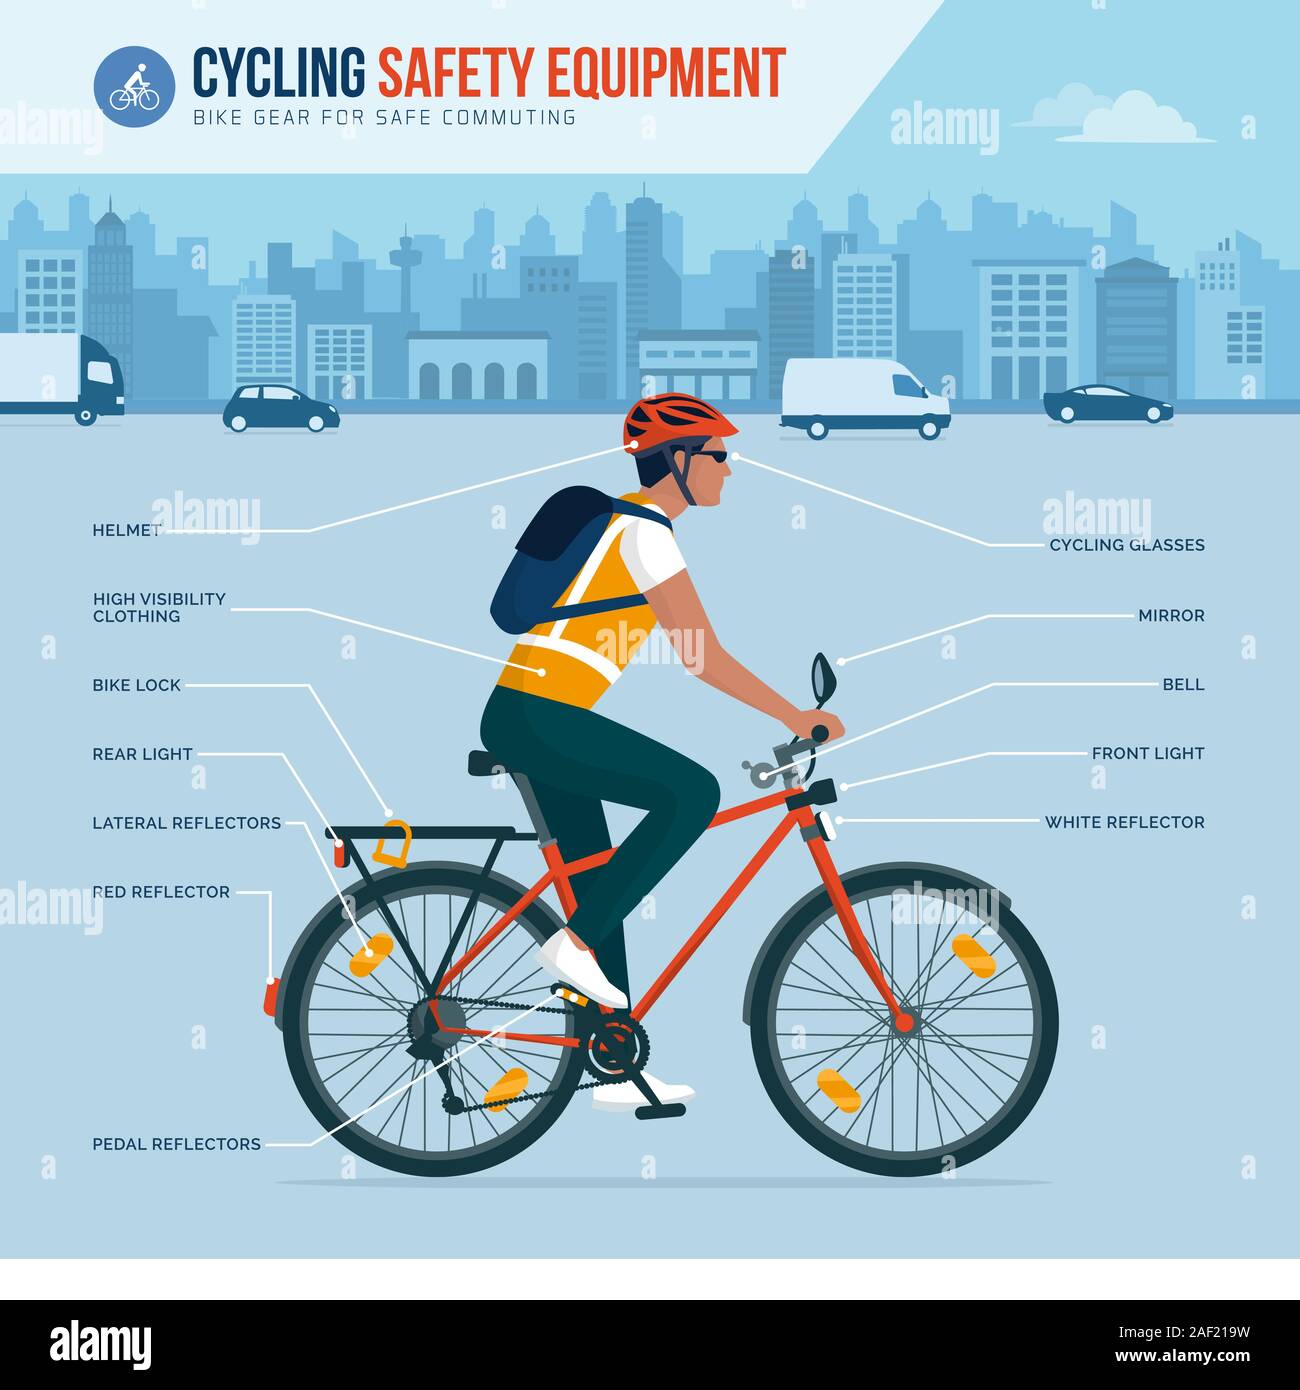 Radfahren Sicherheitsausrüstung und das Zahnrad für die sichere Fahrt in der Stadt, Vektor Infografik Stock Vektor